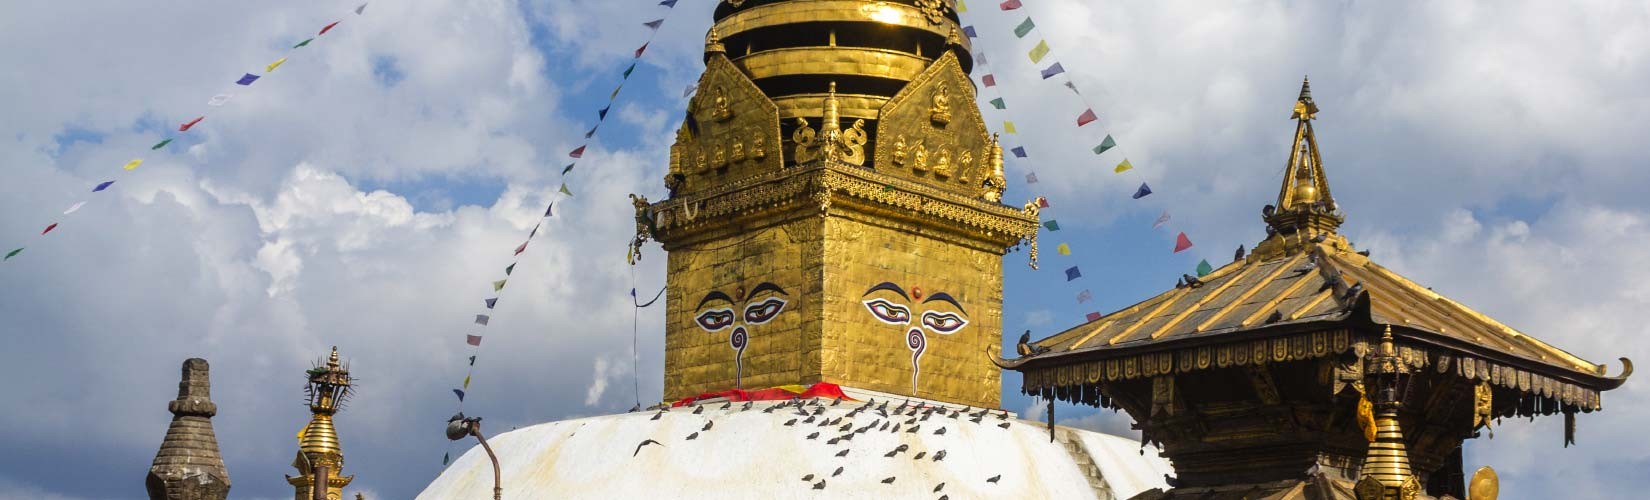 Swayambhunath Stupa Kathmandu Pokhara Chitwan Tour 